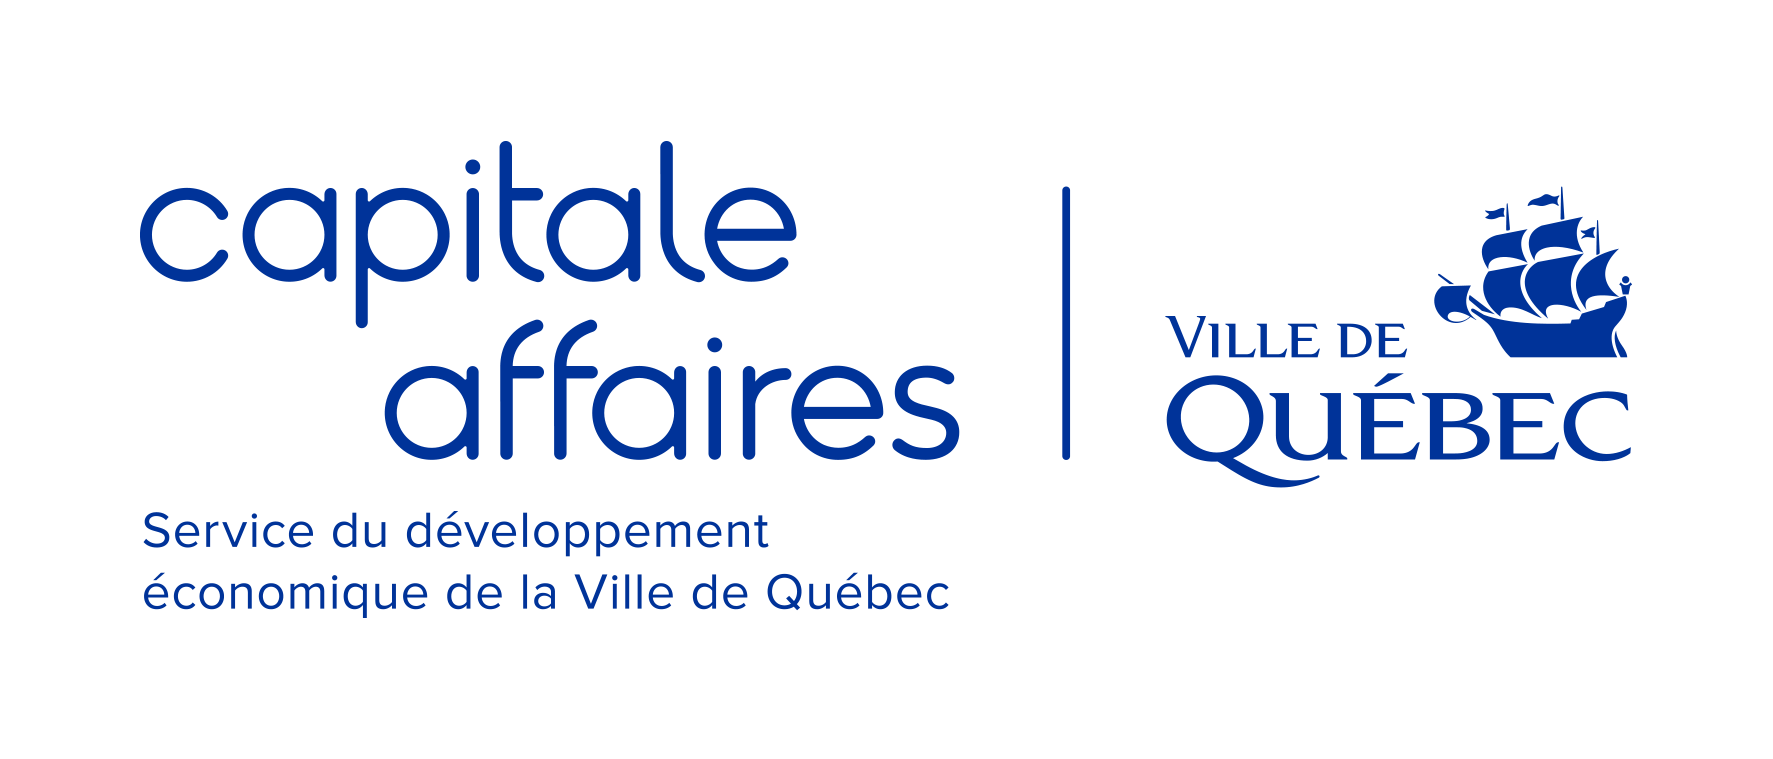 Logo Capitale affaires Ville de Québec